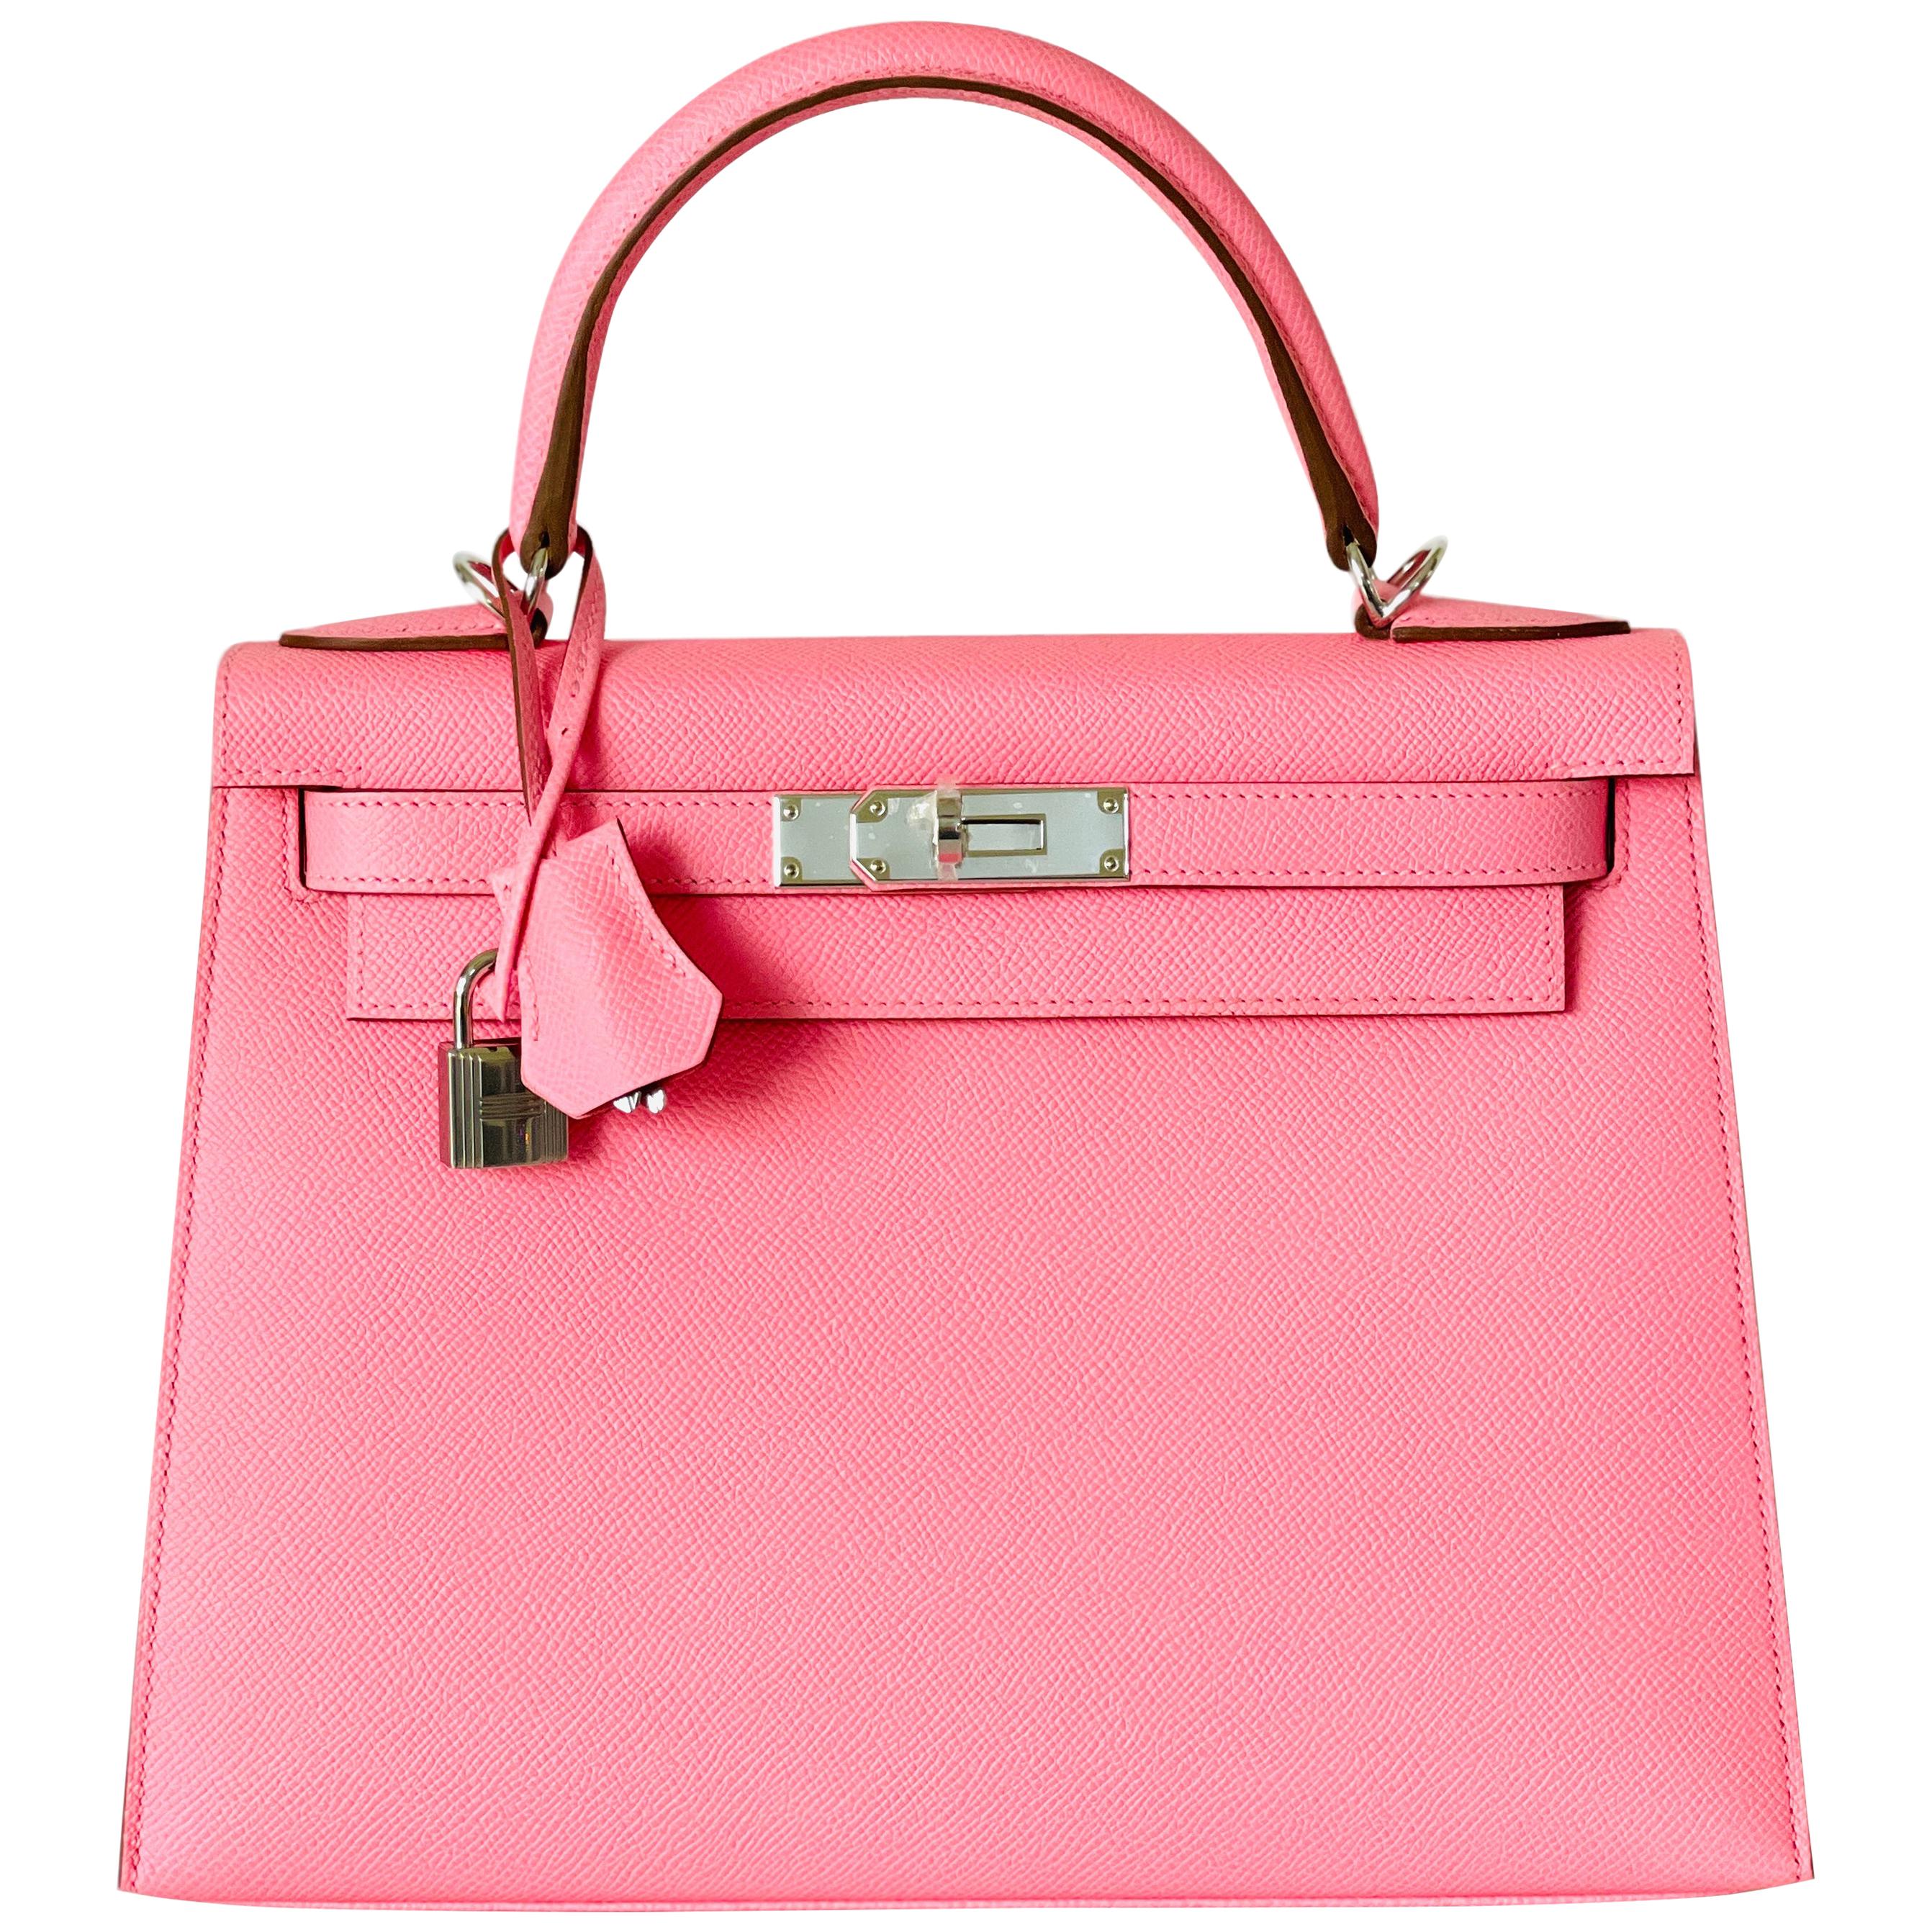 Hermes Kelly 28cm Rose Confetti Pink Sellier Shoulder Bag Y Stamp, 2020